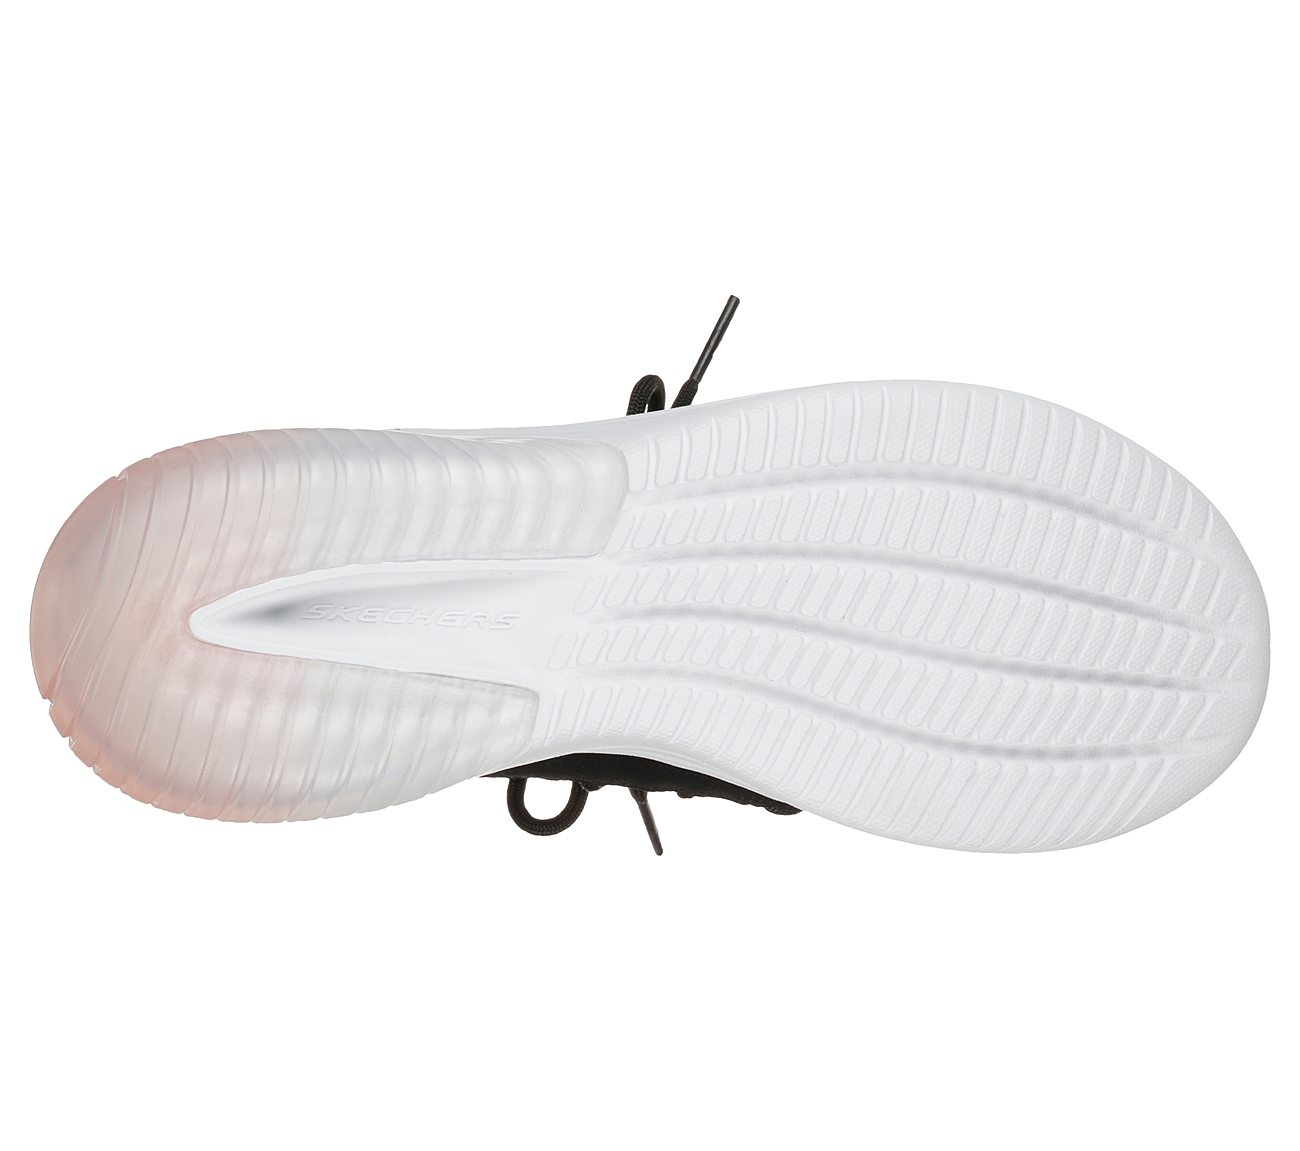 SKECH-AIR ULTRA FLEX-LITE BRE, BLACK/LIGHT PINK Footwear Bottom View